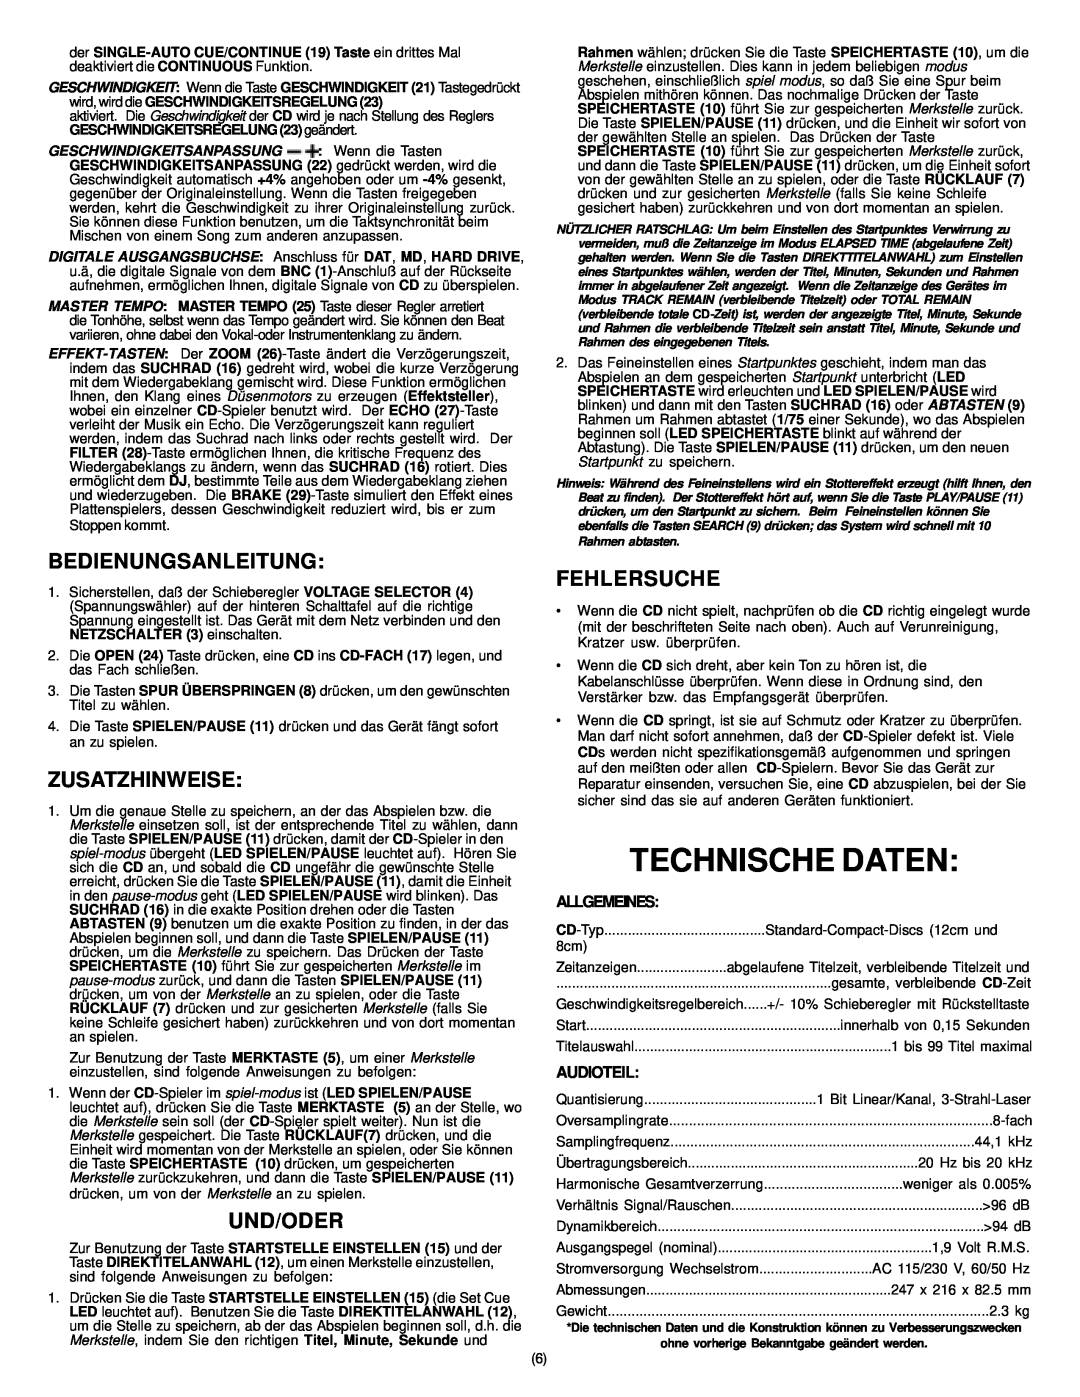 Gemini CD-400X Technische Daten, Bedienungsanleitung, Zusatzhinweise, Und/Oder, Fehlersuche, Allgemeines, Audioteil 